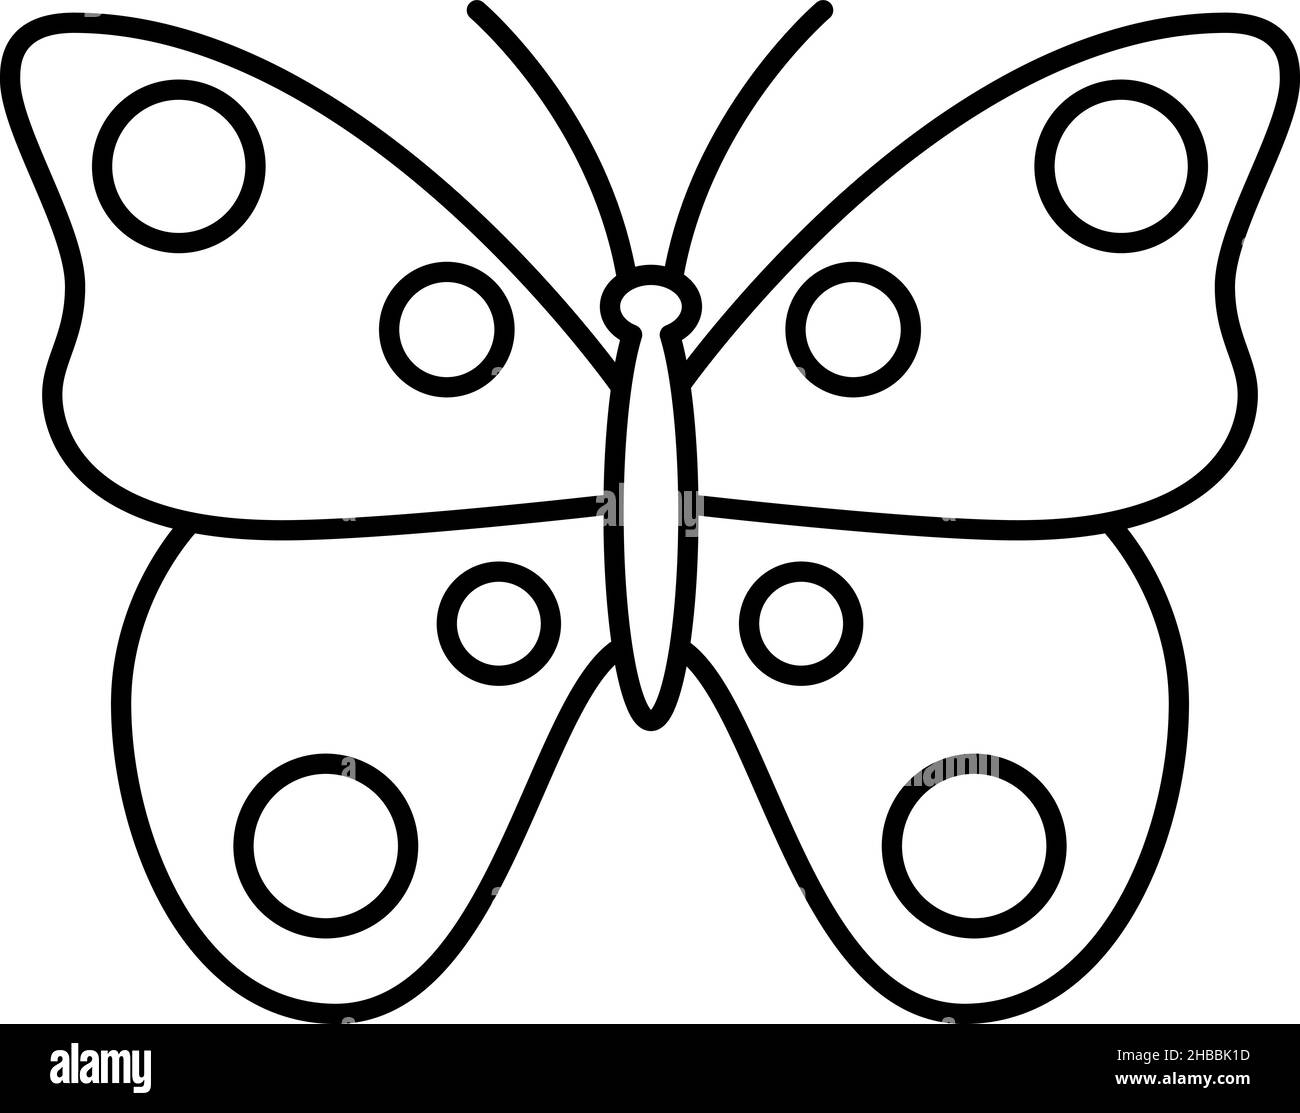 Vektor Des Symbols Für Die Kontur Von Schmetterlingen Stock Vektor